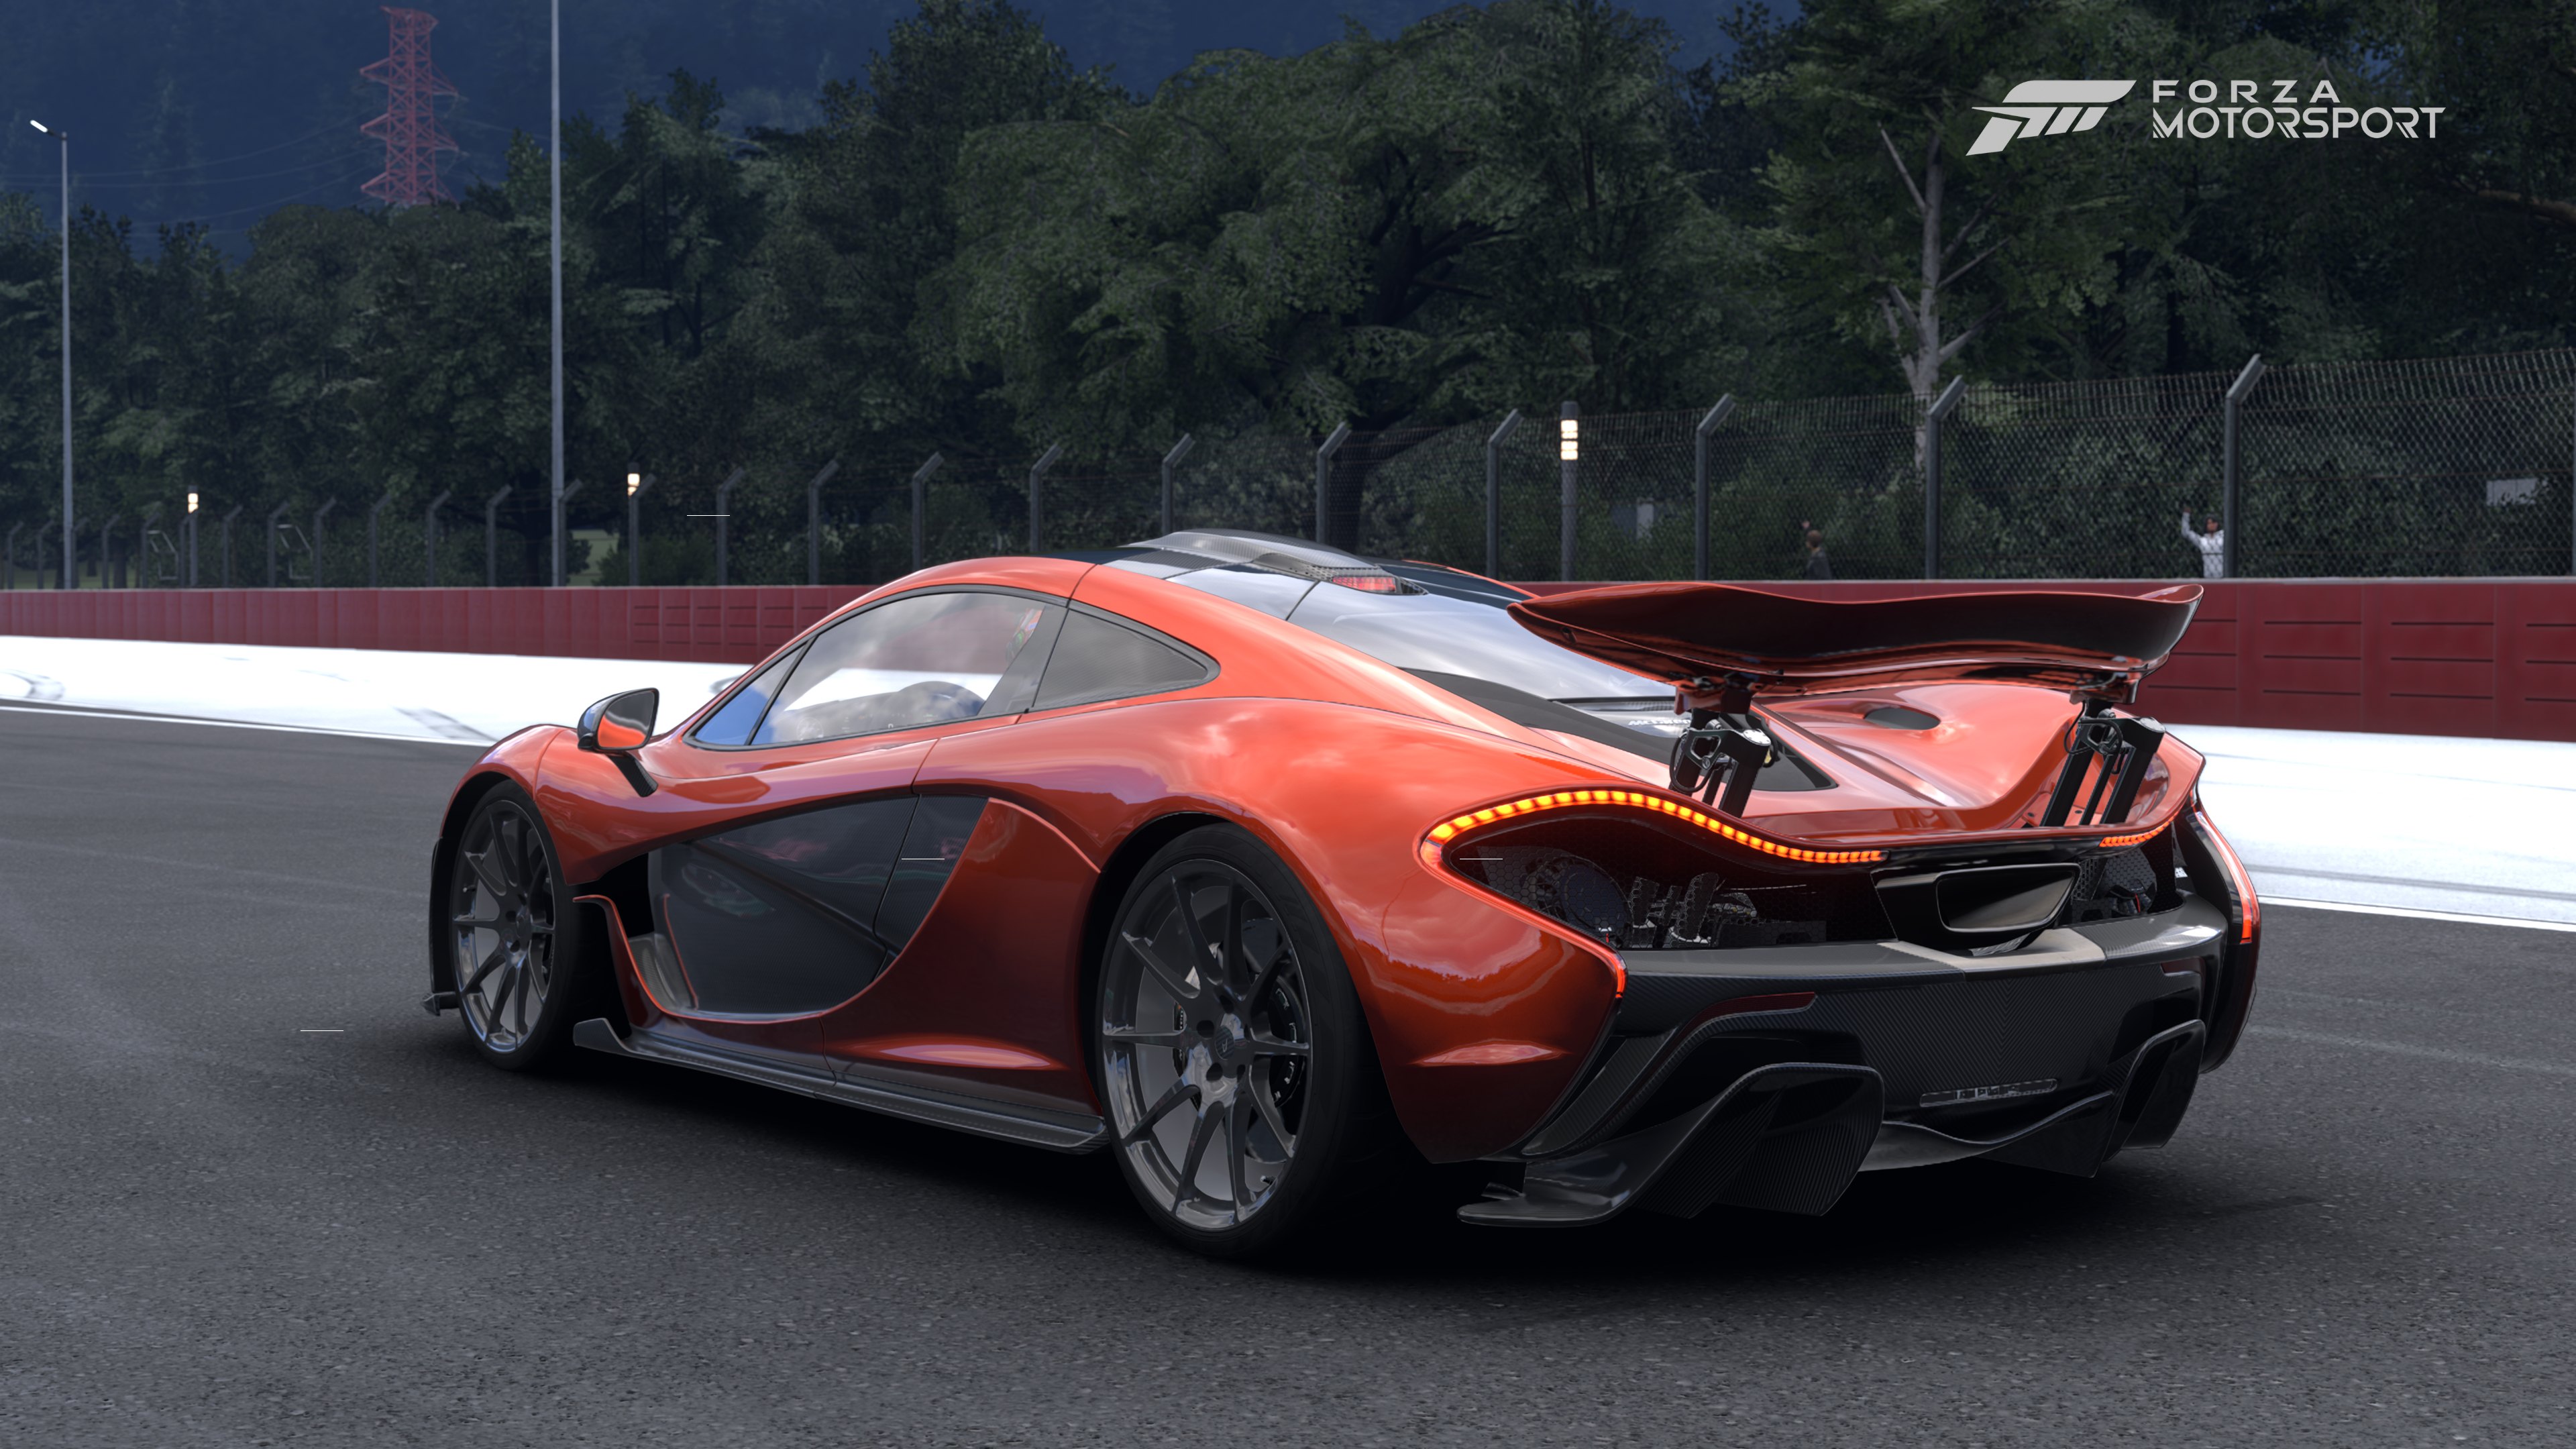 Forza-Motorsport-16-12-2023-2-10-08.jpg